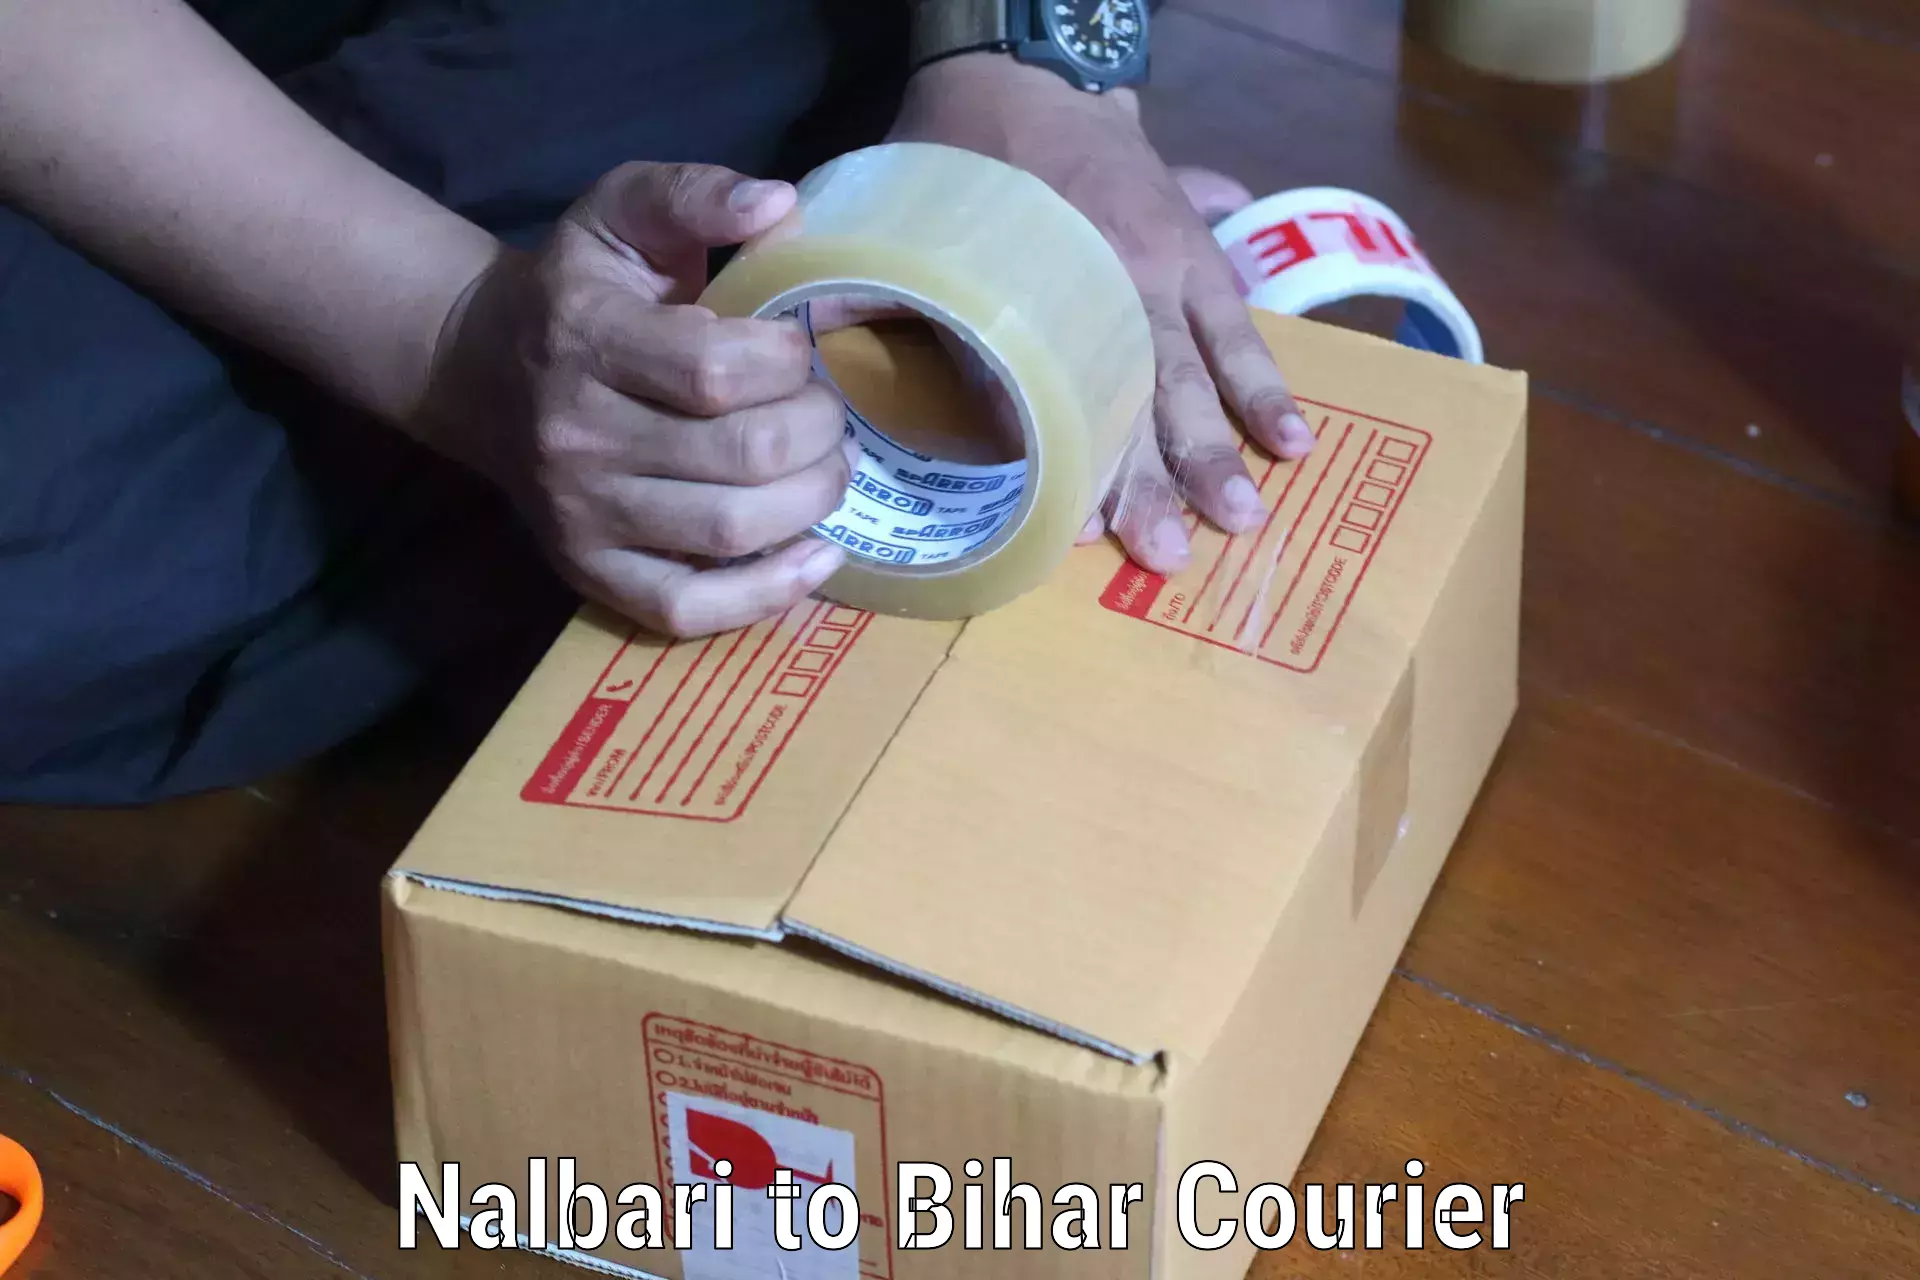 Courier services Nalbari to Dhaka